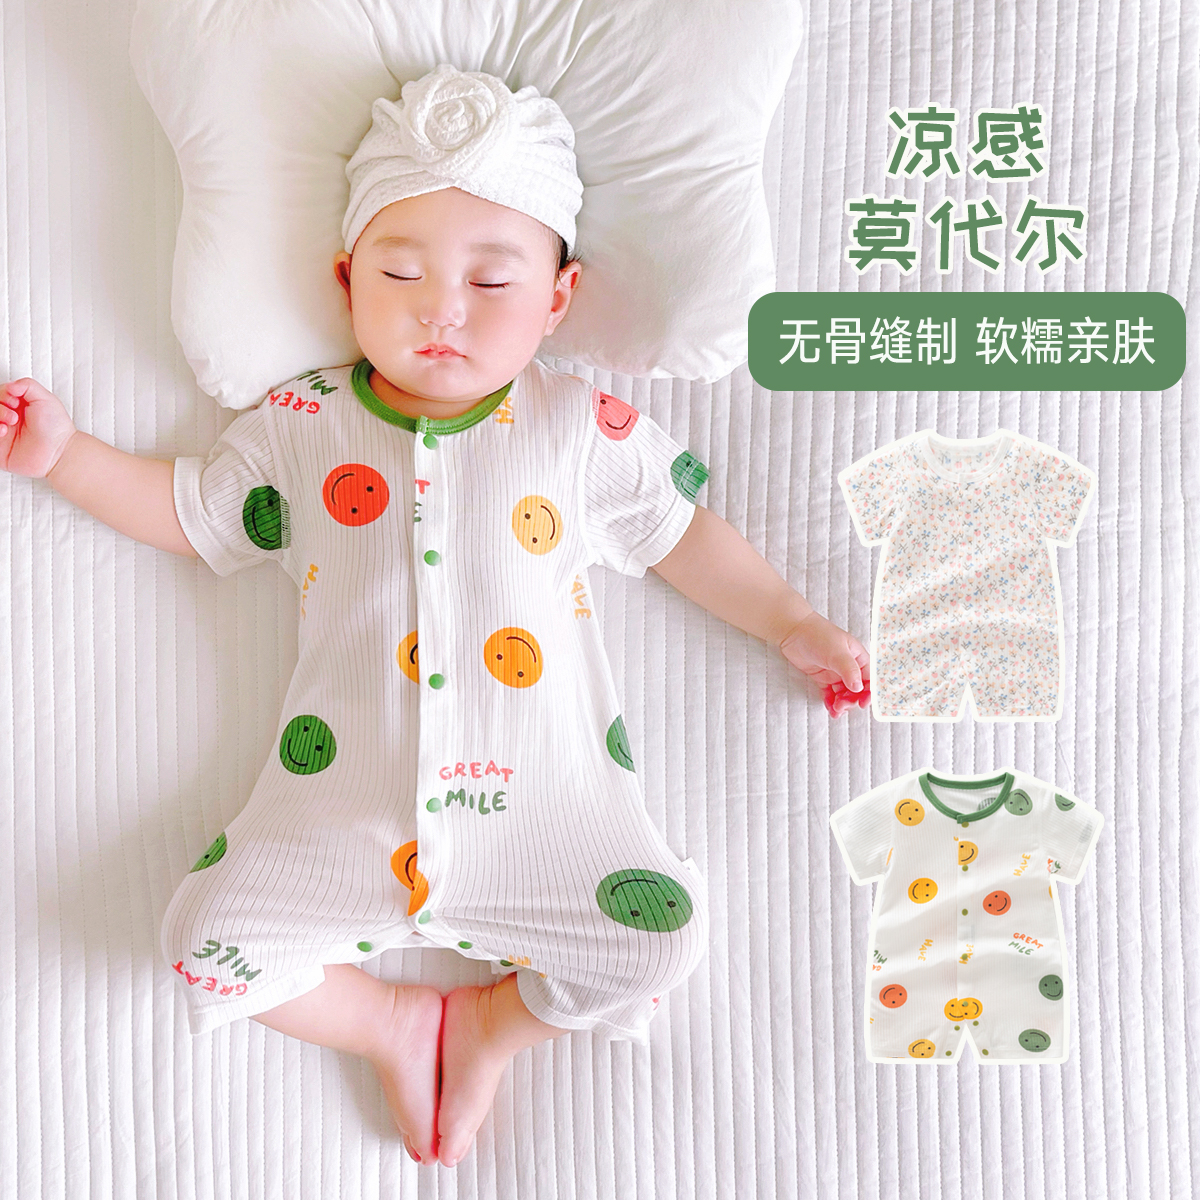 新生婴儿衣服夏季超薄透气莫代尔连体衣男女宝宝空调服睡衣外出服